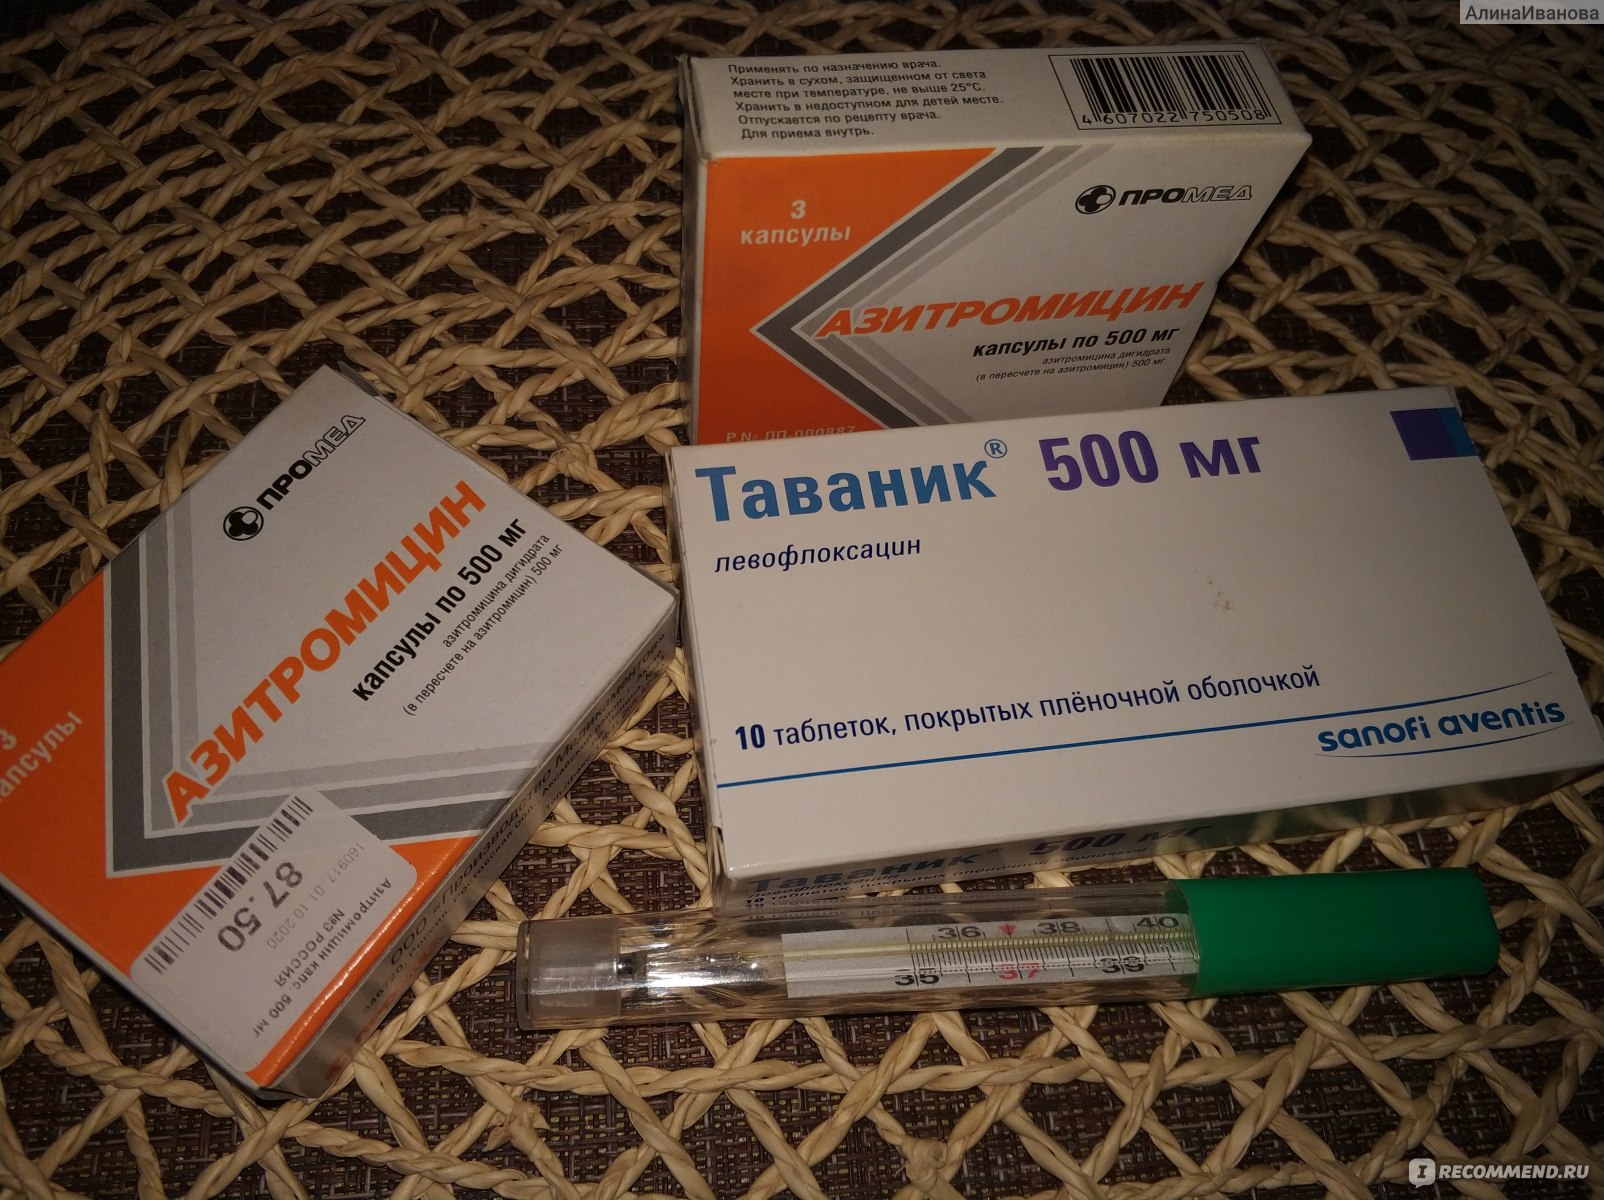 Антибиотик Sanofi aventis Таваник - «???При огромном выборе .